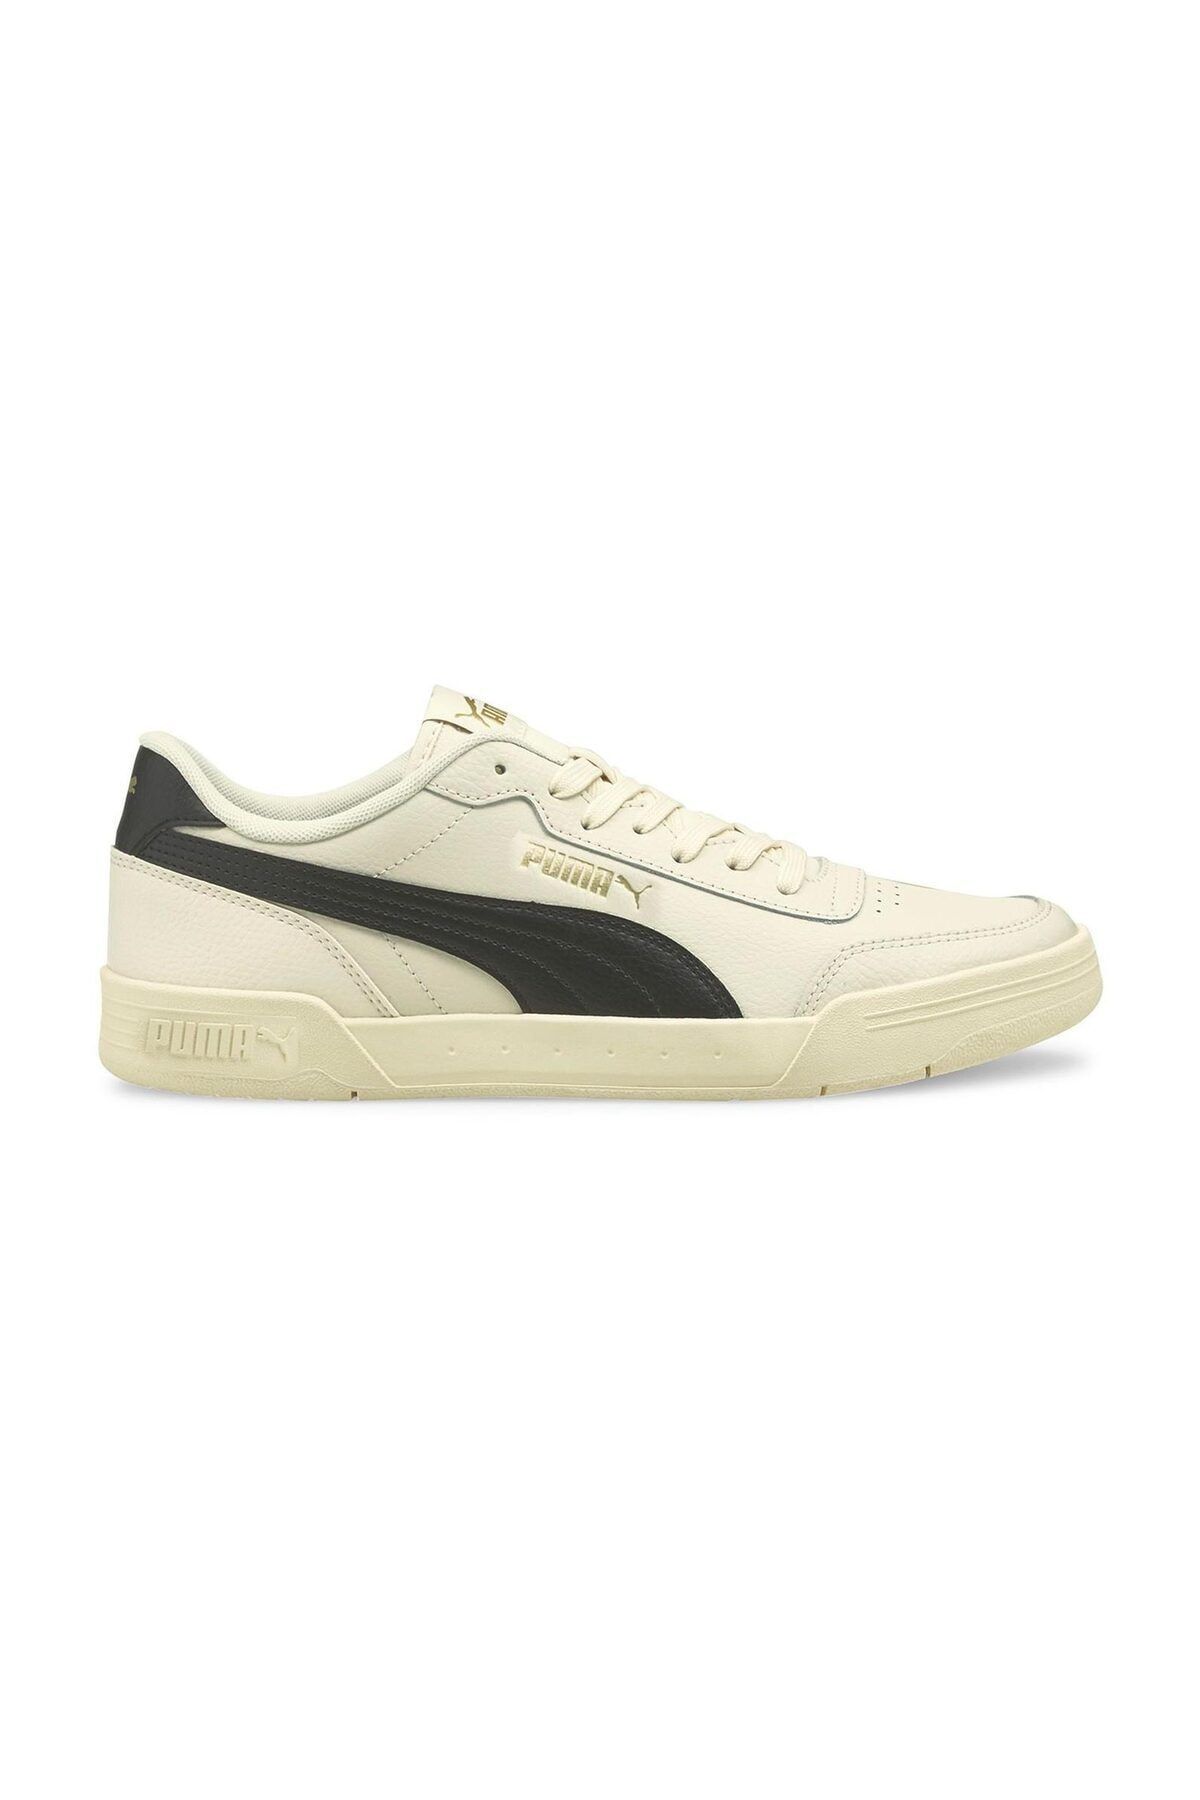 Puma Unisex Sneaker - Caracal Whisper White - 36986329